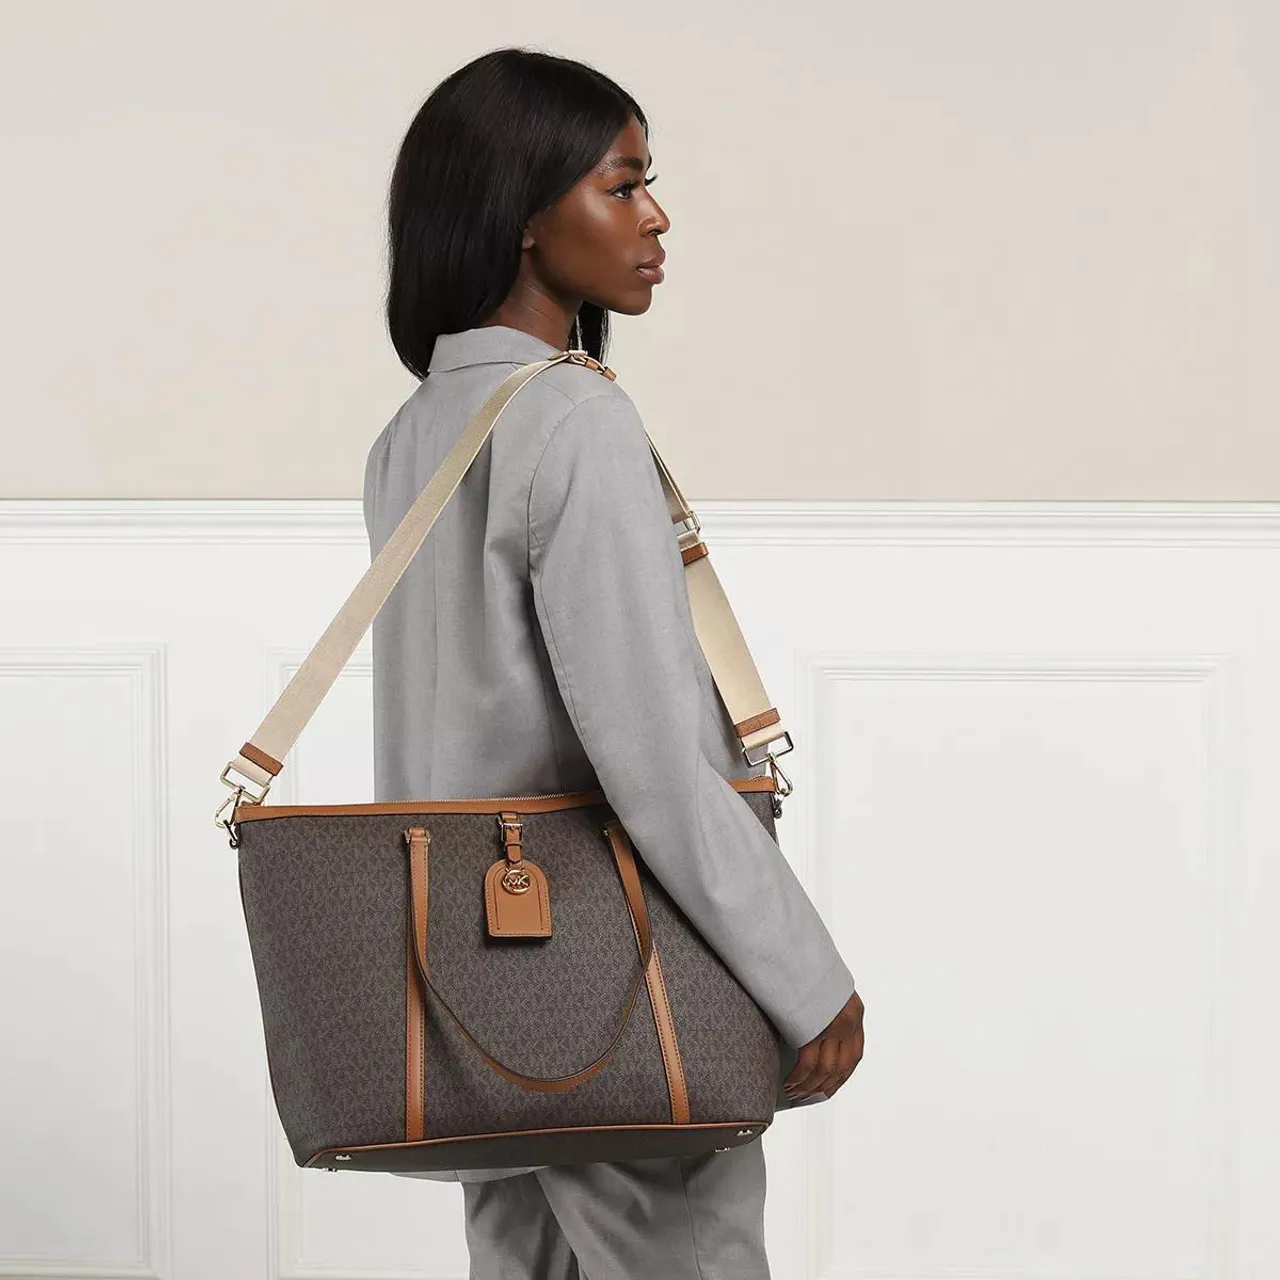 Michael Kors Tote Bags - Lg Travel Sleeve Tote - brown - Tote Bags for ladies